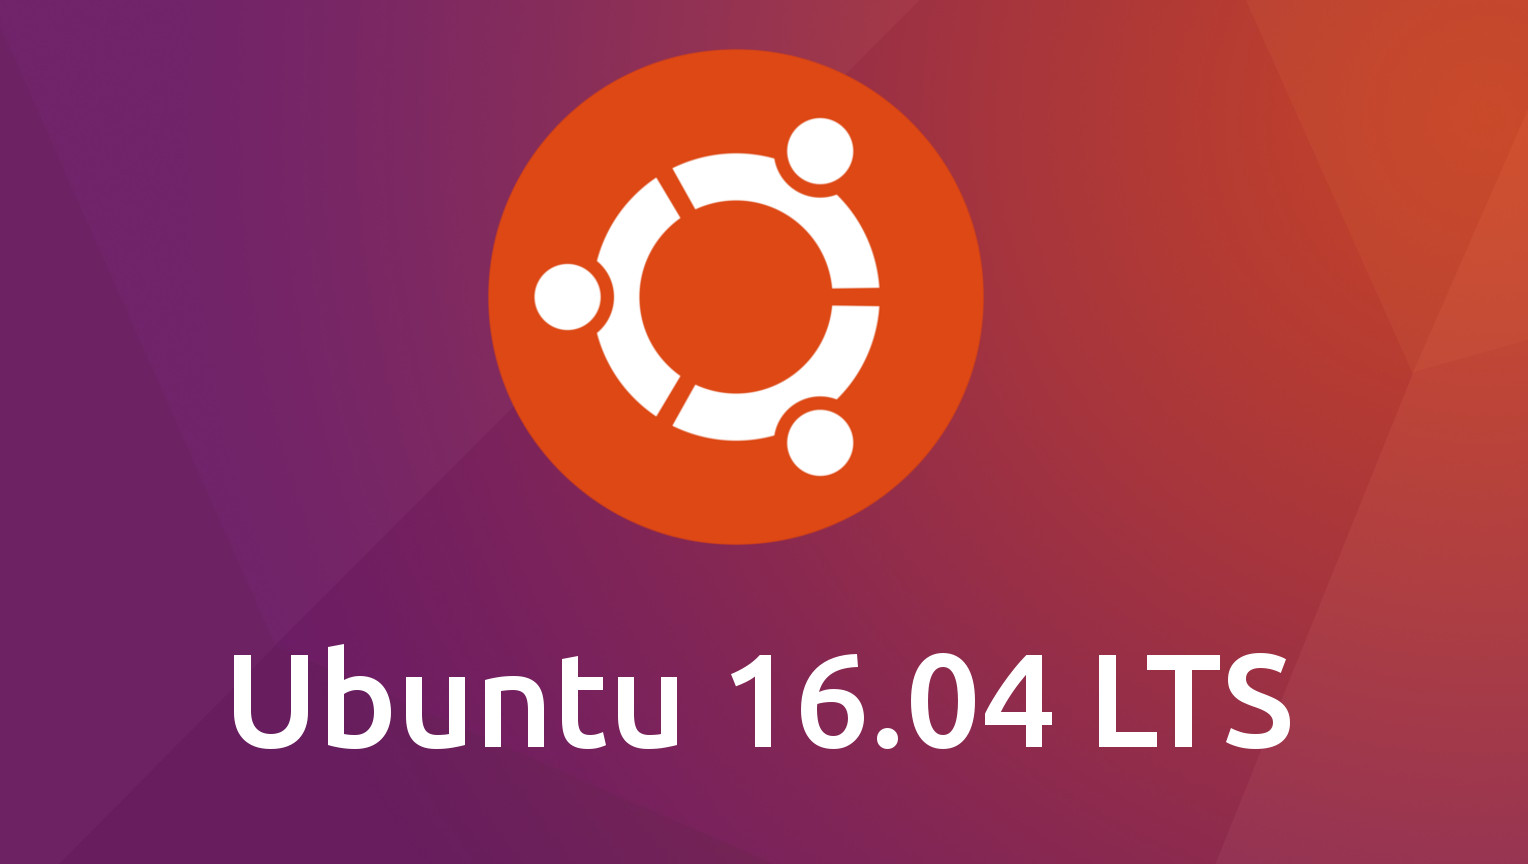 输入法 ubuntu ibus-在Ubuntu中配置和使用IBus输入法框架，提升文字输入效率